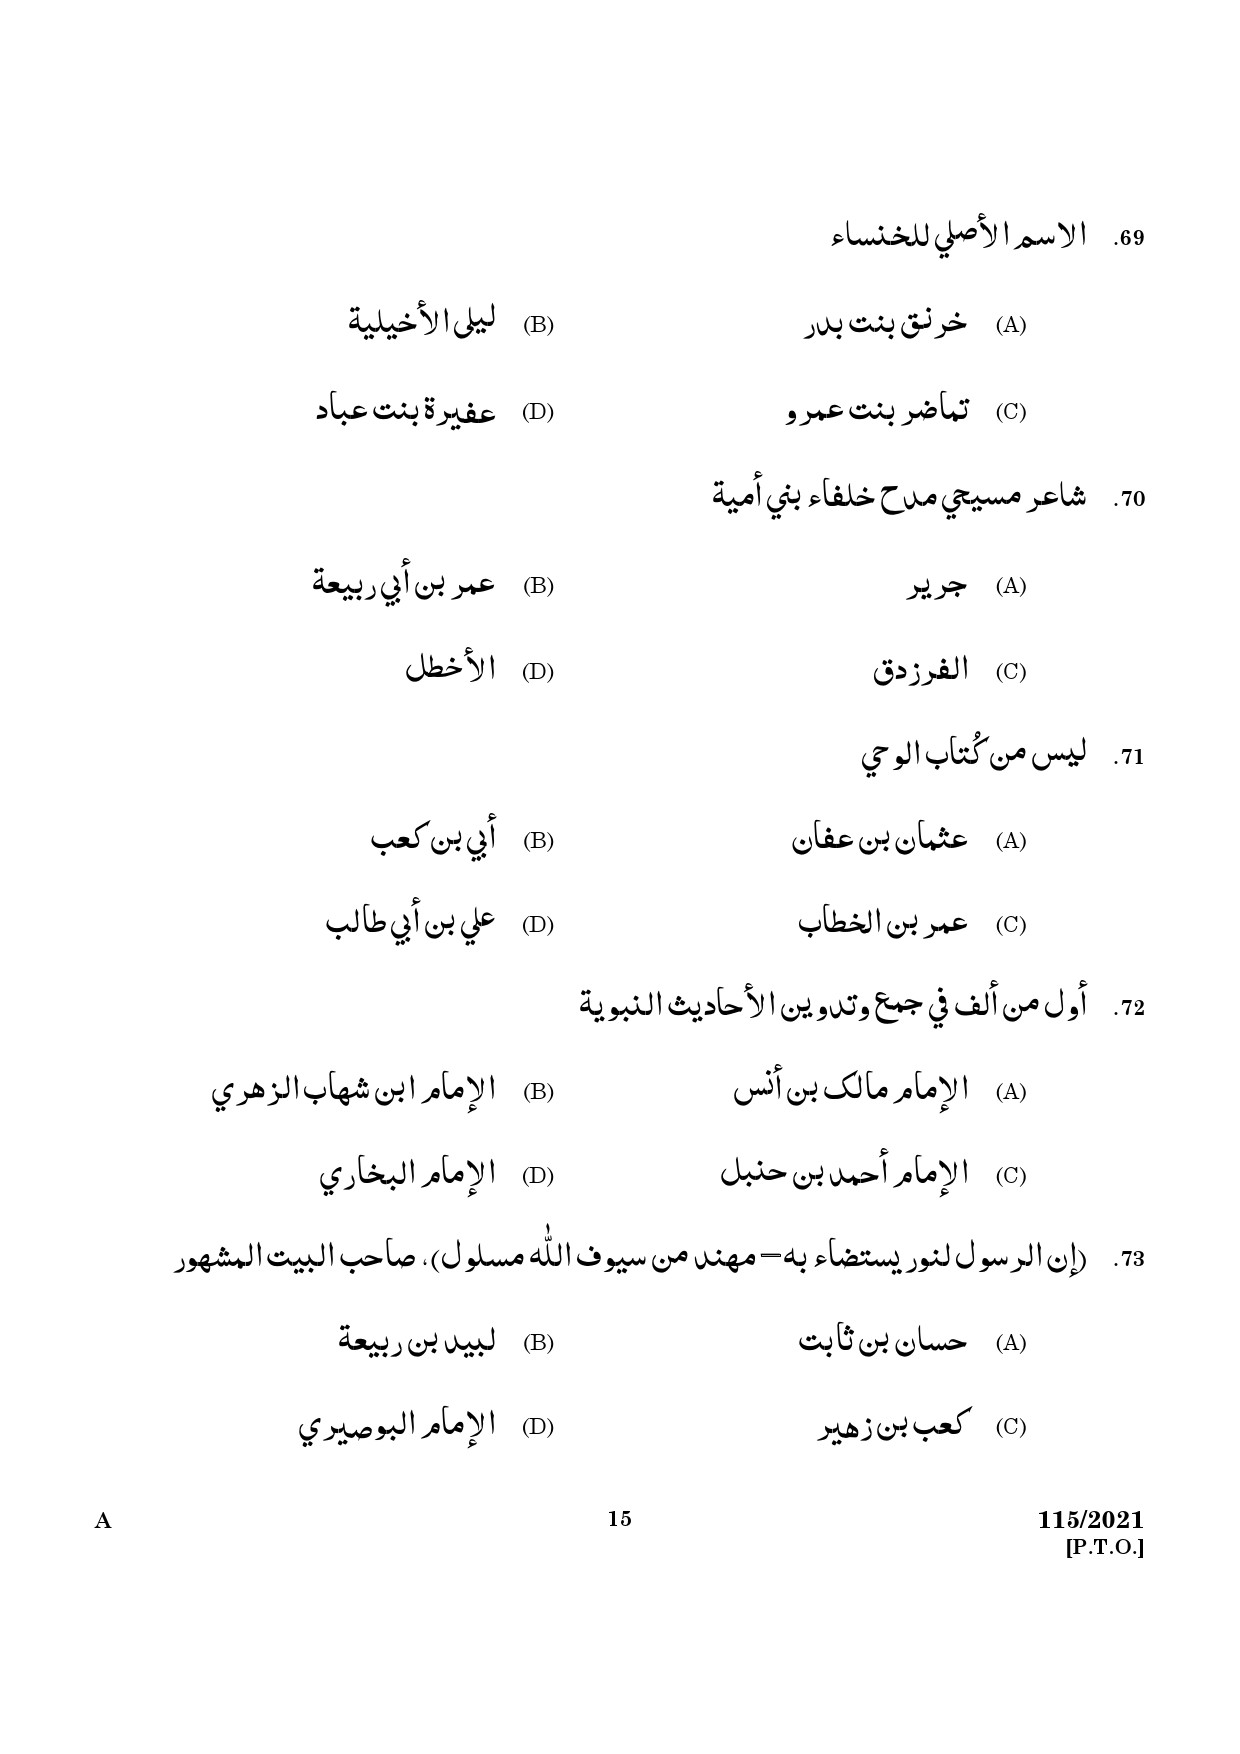 KPSC Part Time Junior Language Teacher Arabic Exam 2021 Code 1152021 13